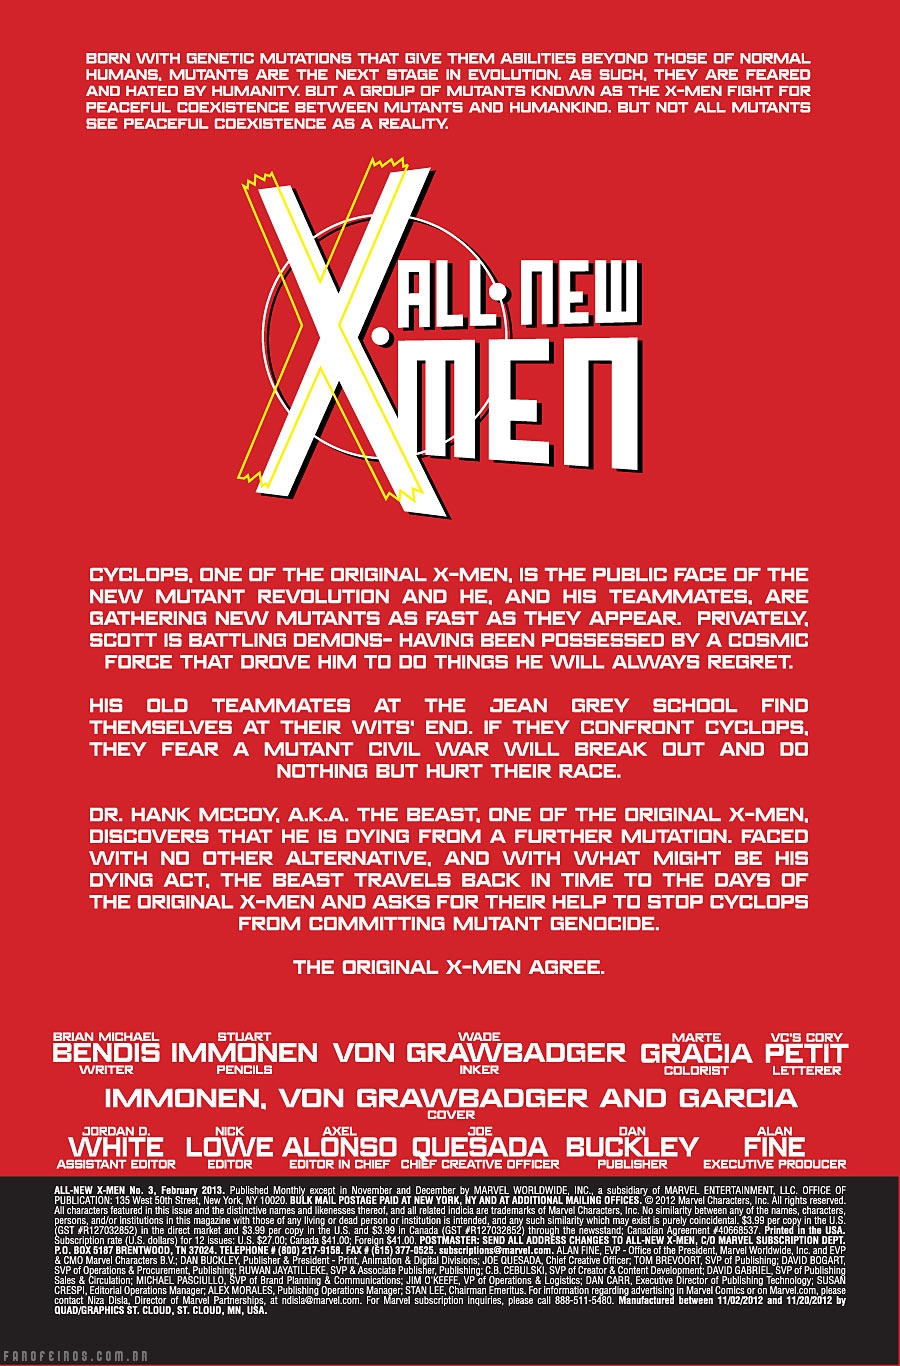 Preview de All New X-Men #3 - Ciclope - Marvel Comics - Blog Farofeiros